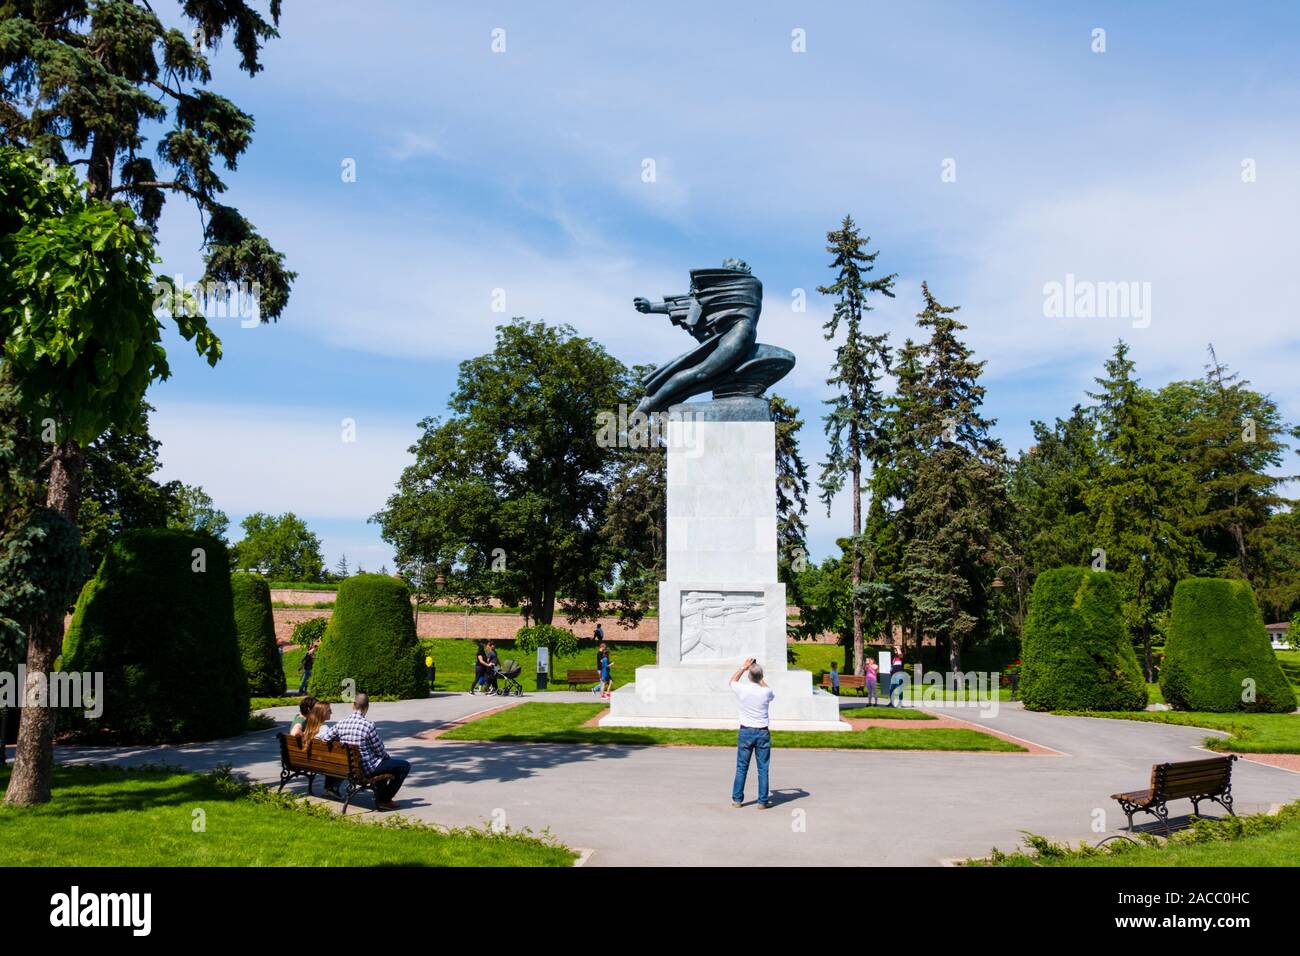 Spomenik zahvalnosti Francuskoj, Monument of Gratitude to France, Kalemegdan, Belgrade, Serbia Stock Photo